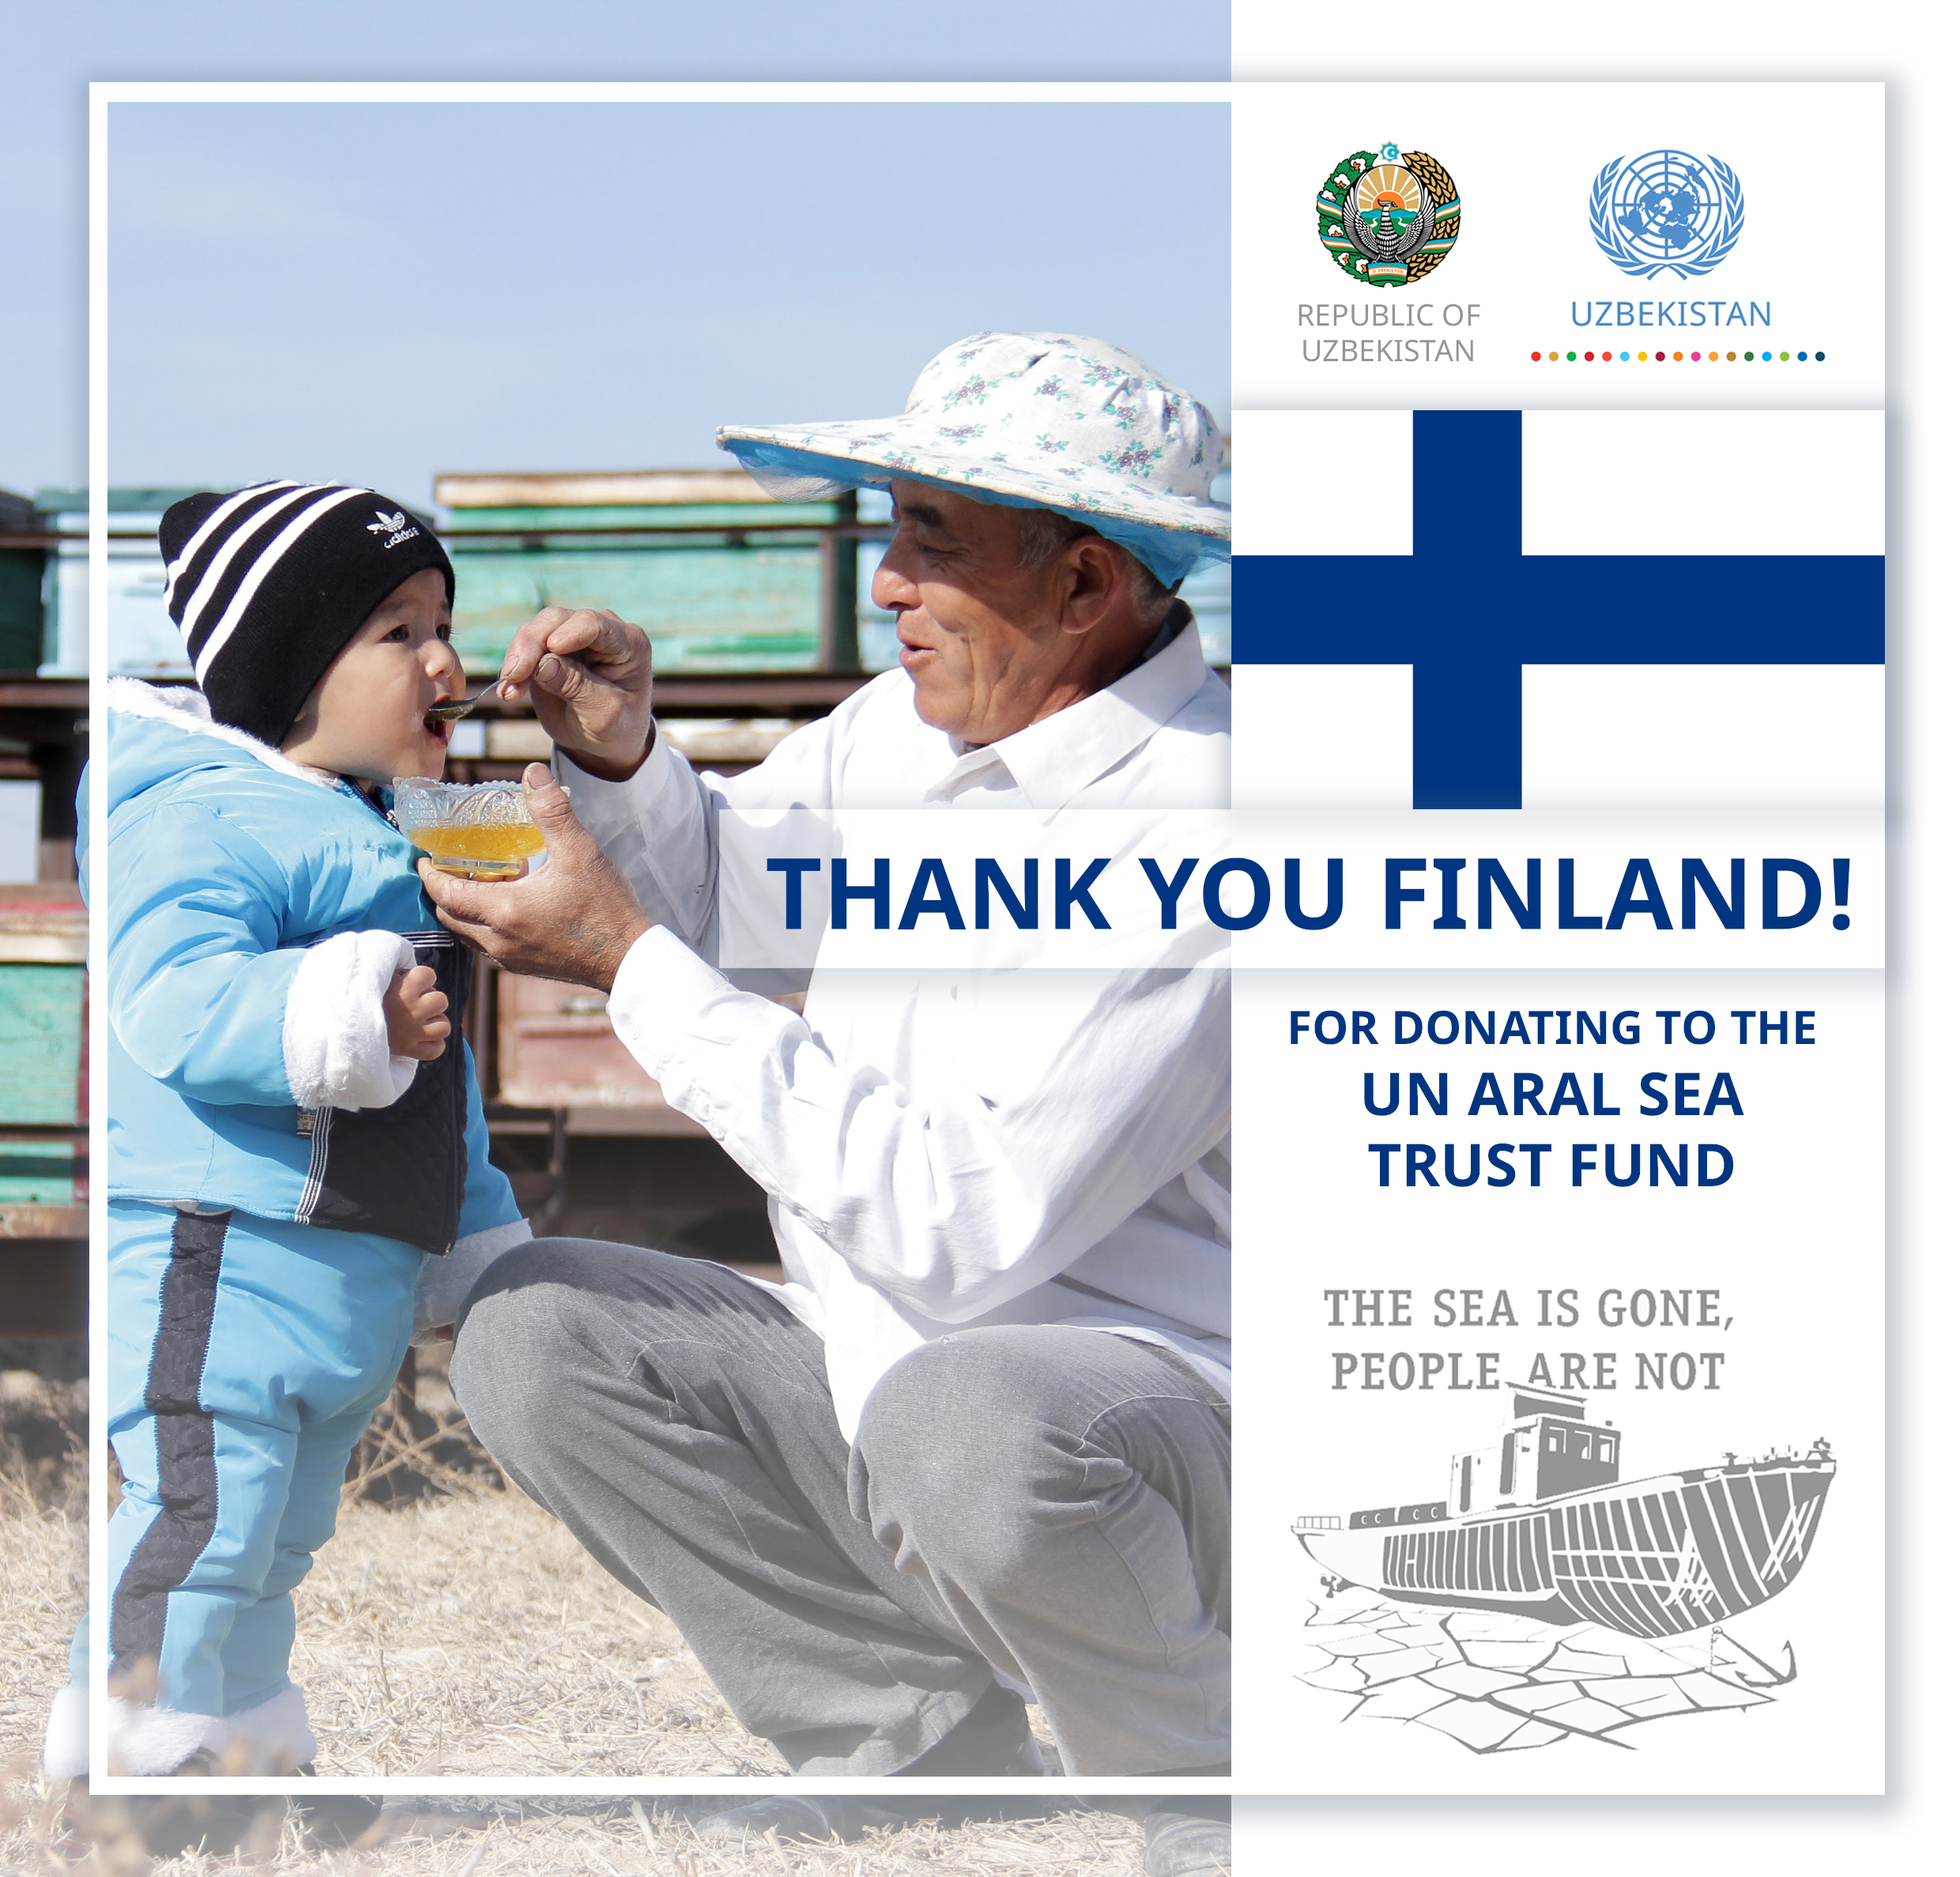 Правительство Финляндии осуществило вклад в Трастовый фонд ООН